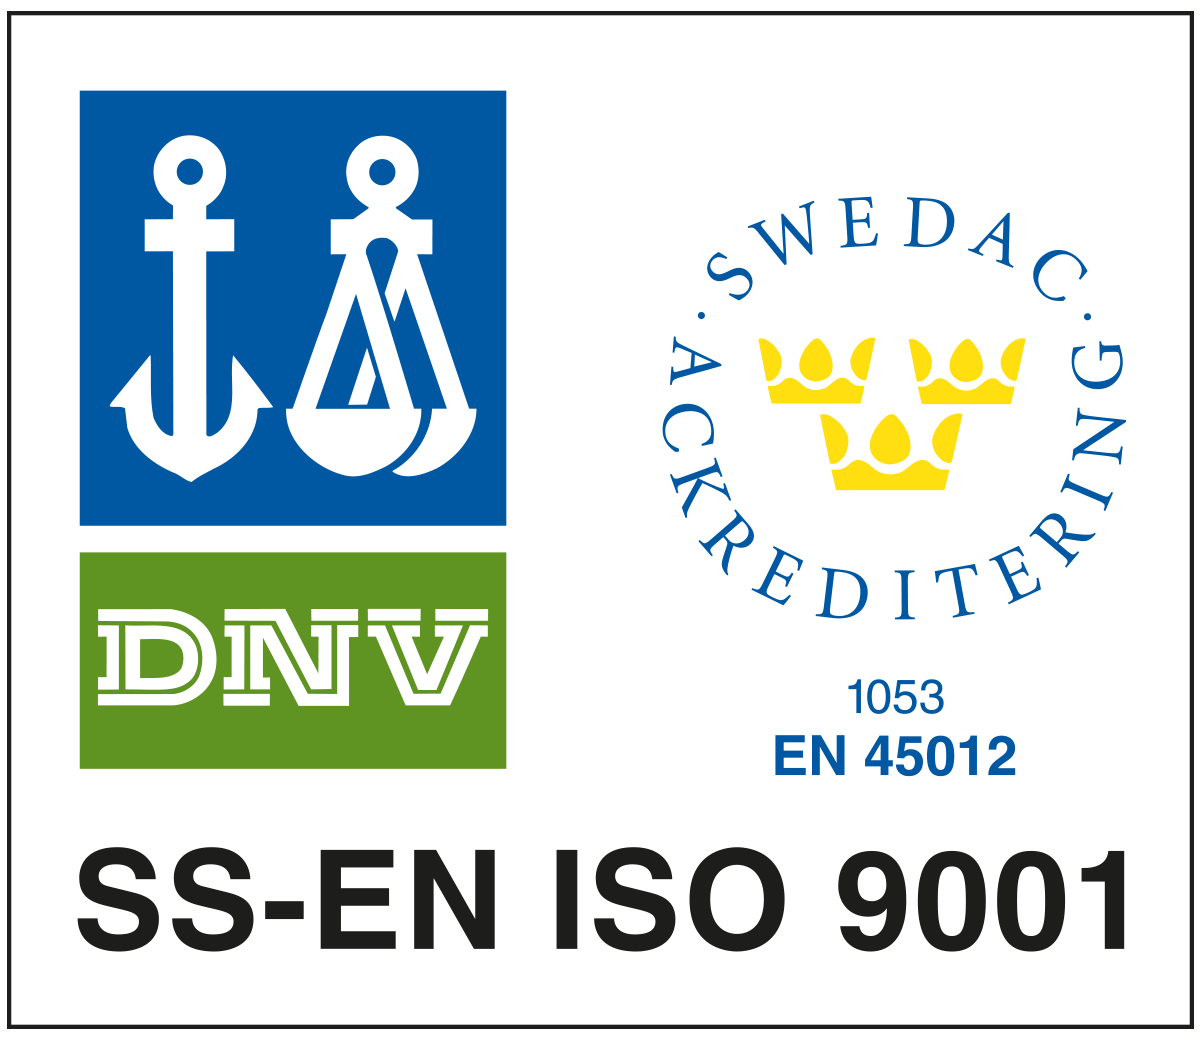 SS-EN ISO 9001 symbol